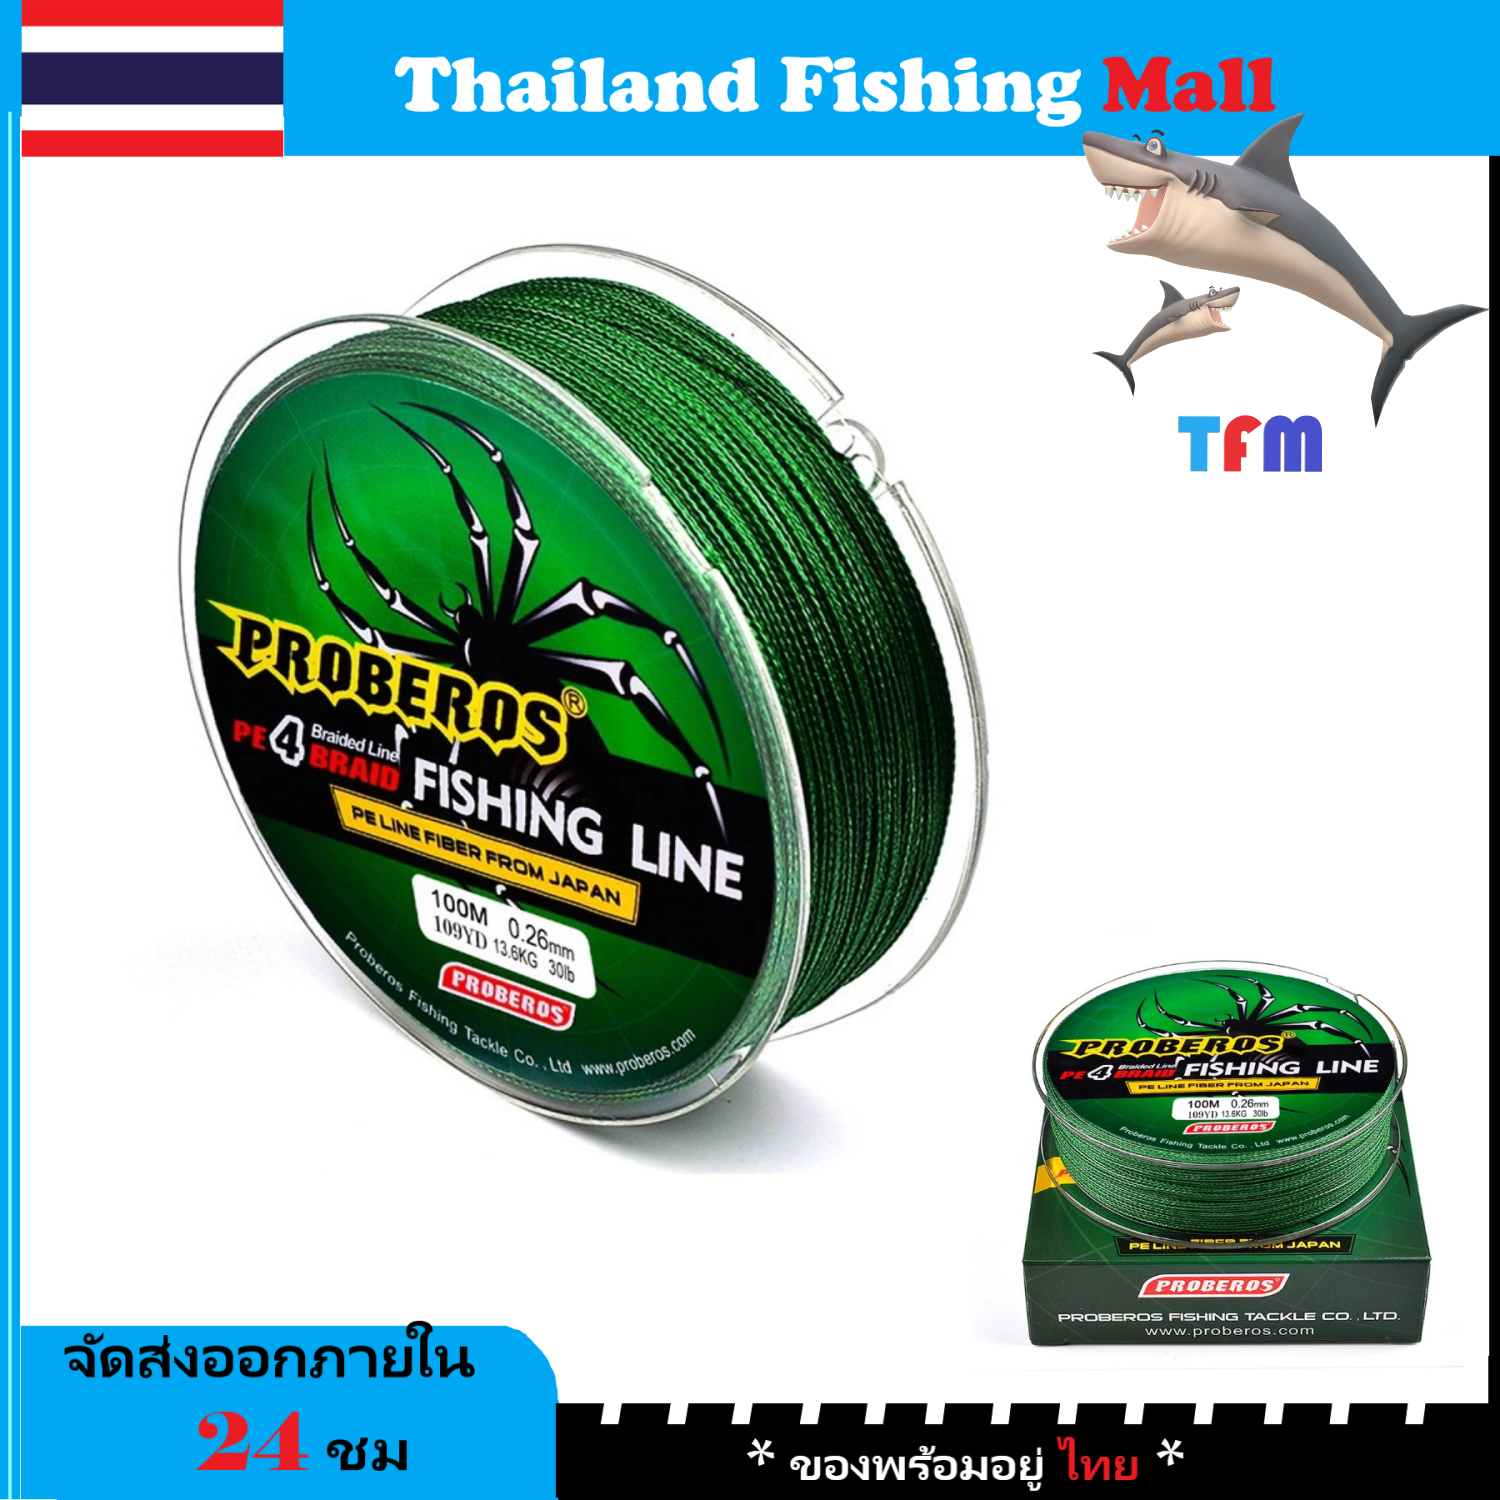 สายเบ็ด PE ถัก 4 / 1-2 วัน (ส่งไว ราคาส่ง) สีเทา เหนียว ทน ยาว 100 เมตร - ศูนย์การค้าไทยฟิชชิ่ง [ Thailand Fishing Mall ] Fishing line wire Proberos Pro Beros - Green